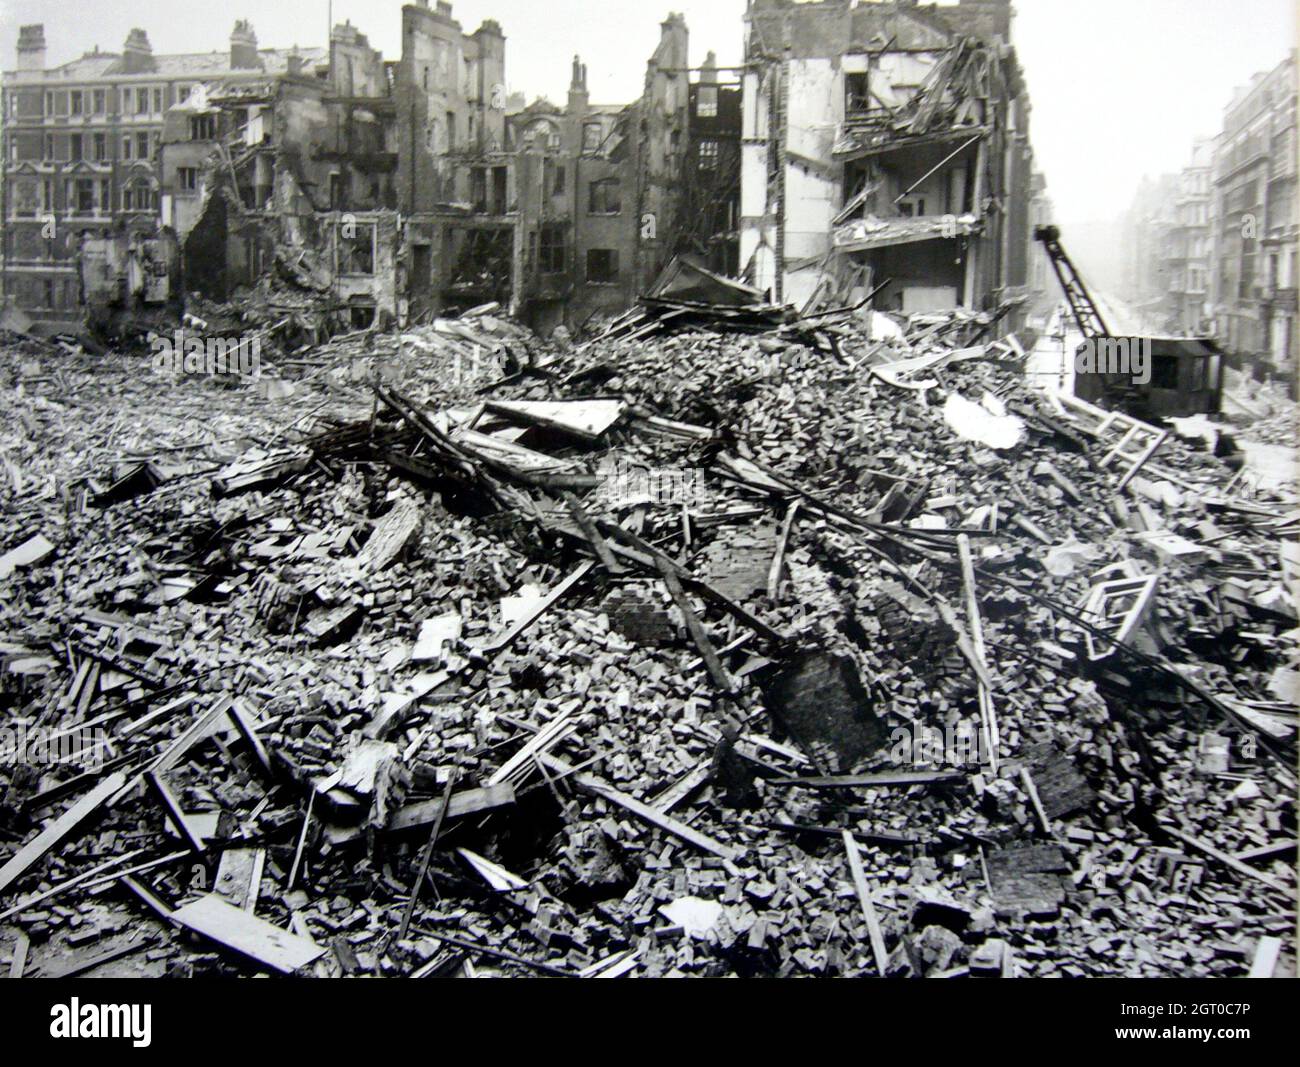 Dégâts importants causés par des bombes et des explosions à Hallam Street et Duchess Street pendant le Blitz, Westminster, Londres 1940 Banque D'Images